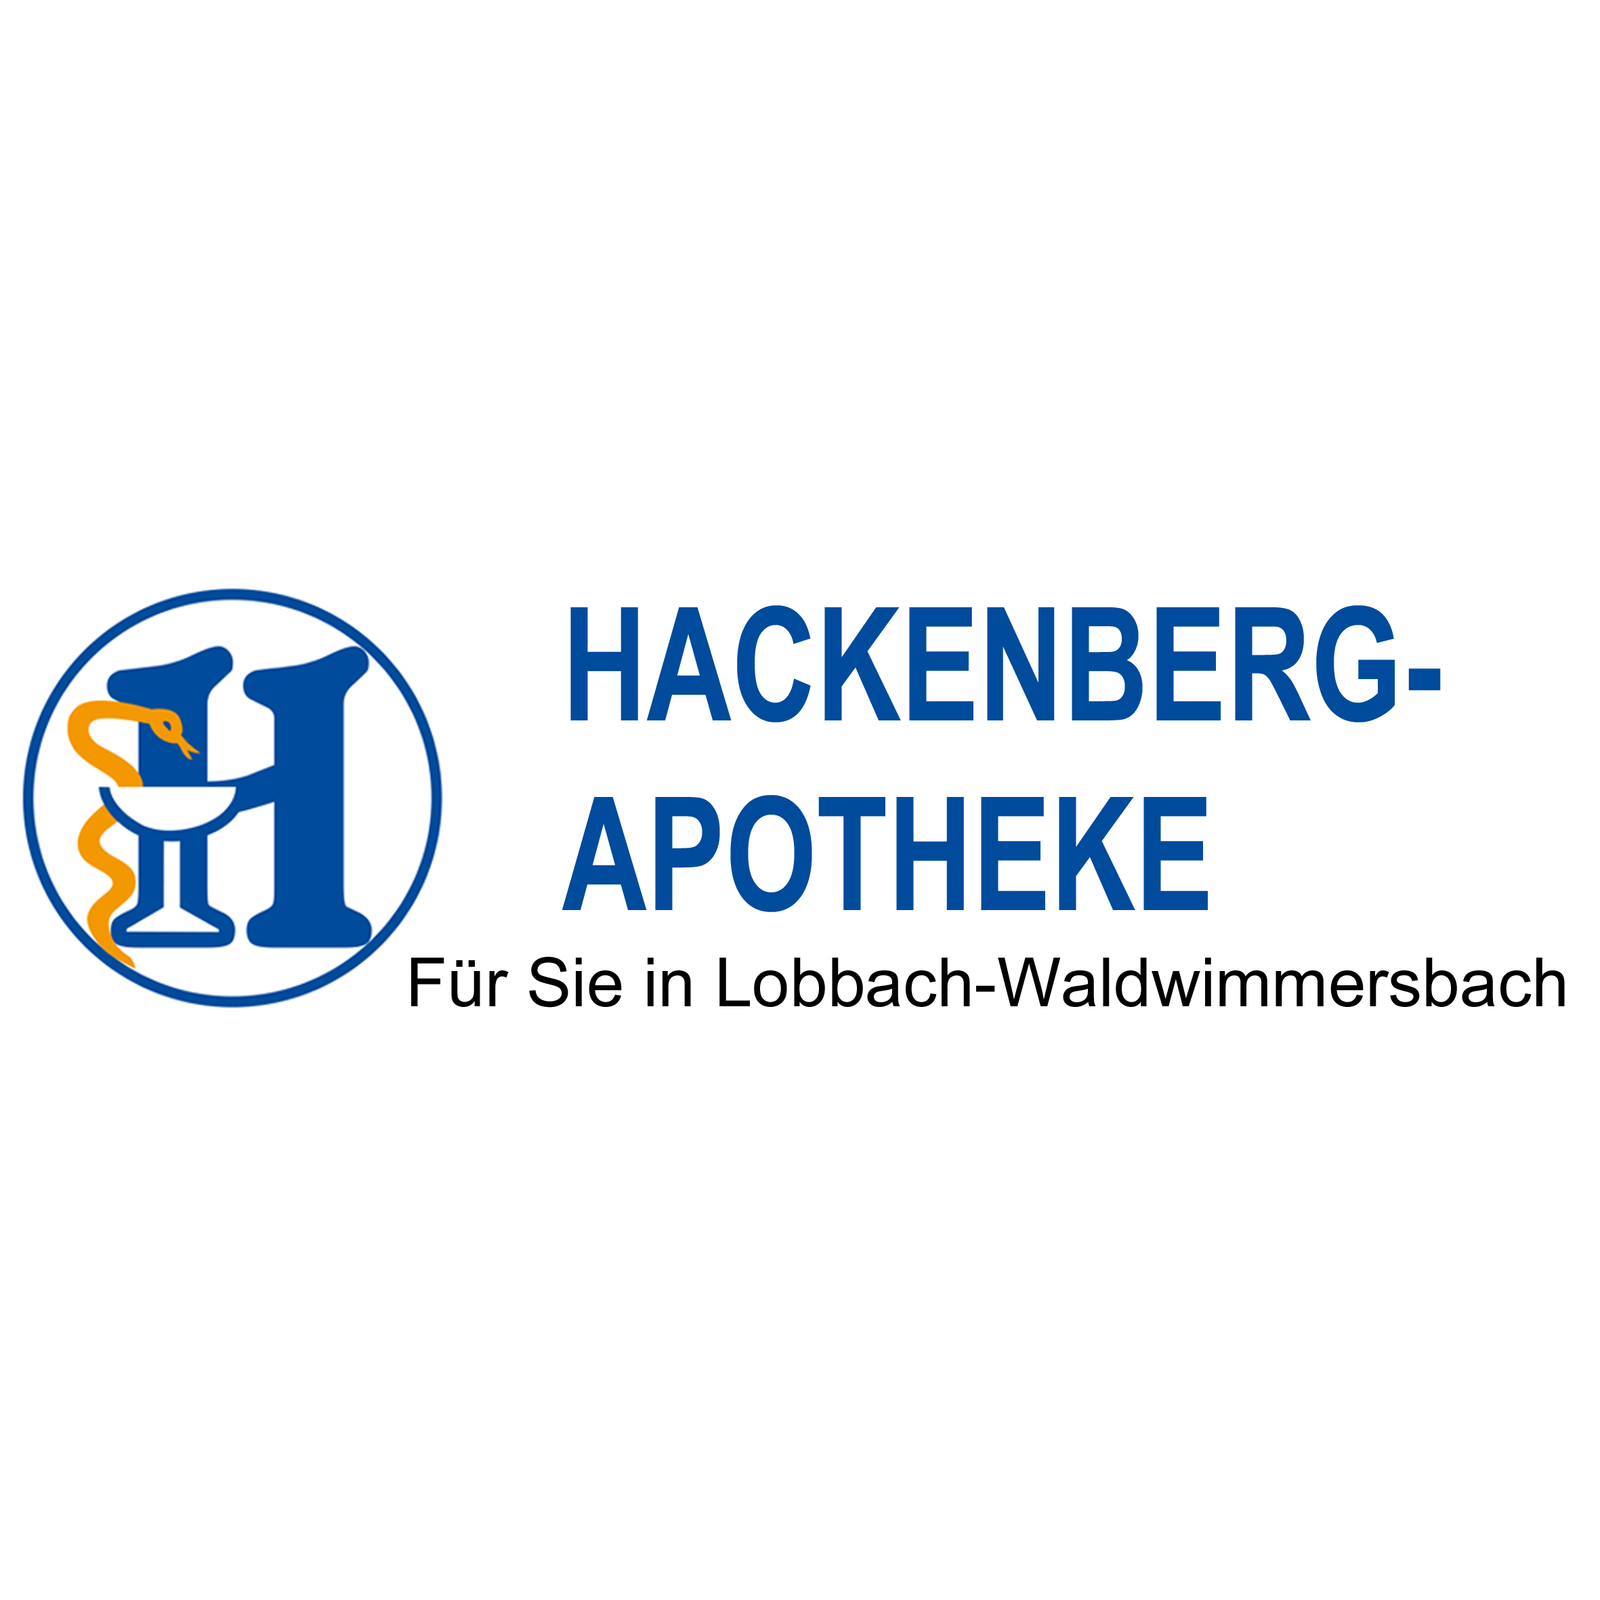 Hackenberg-Apotheke Waldwimmersbach Logo